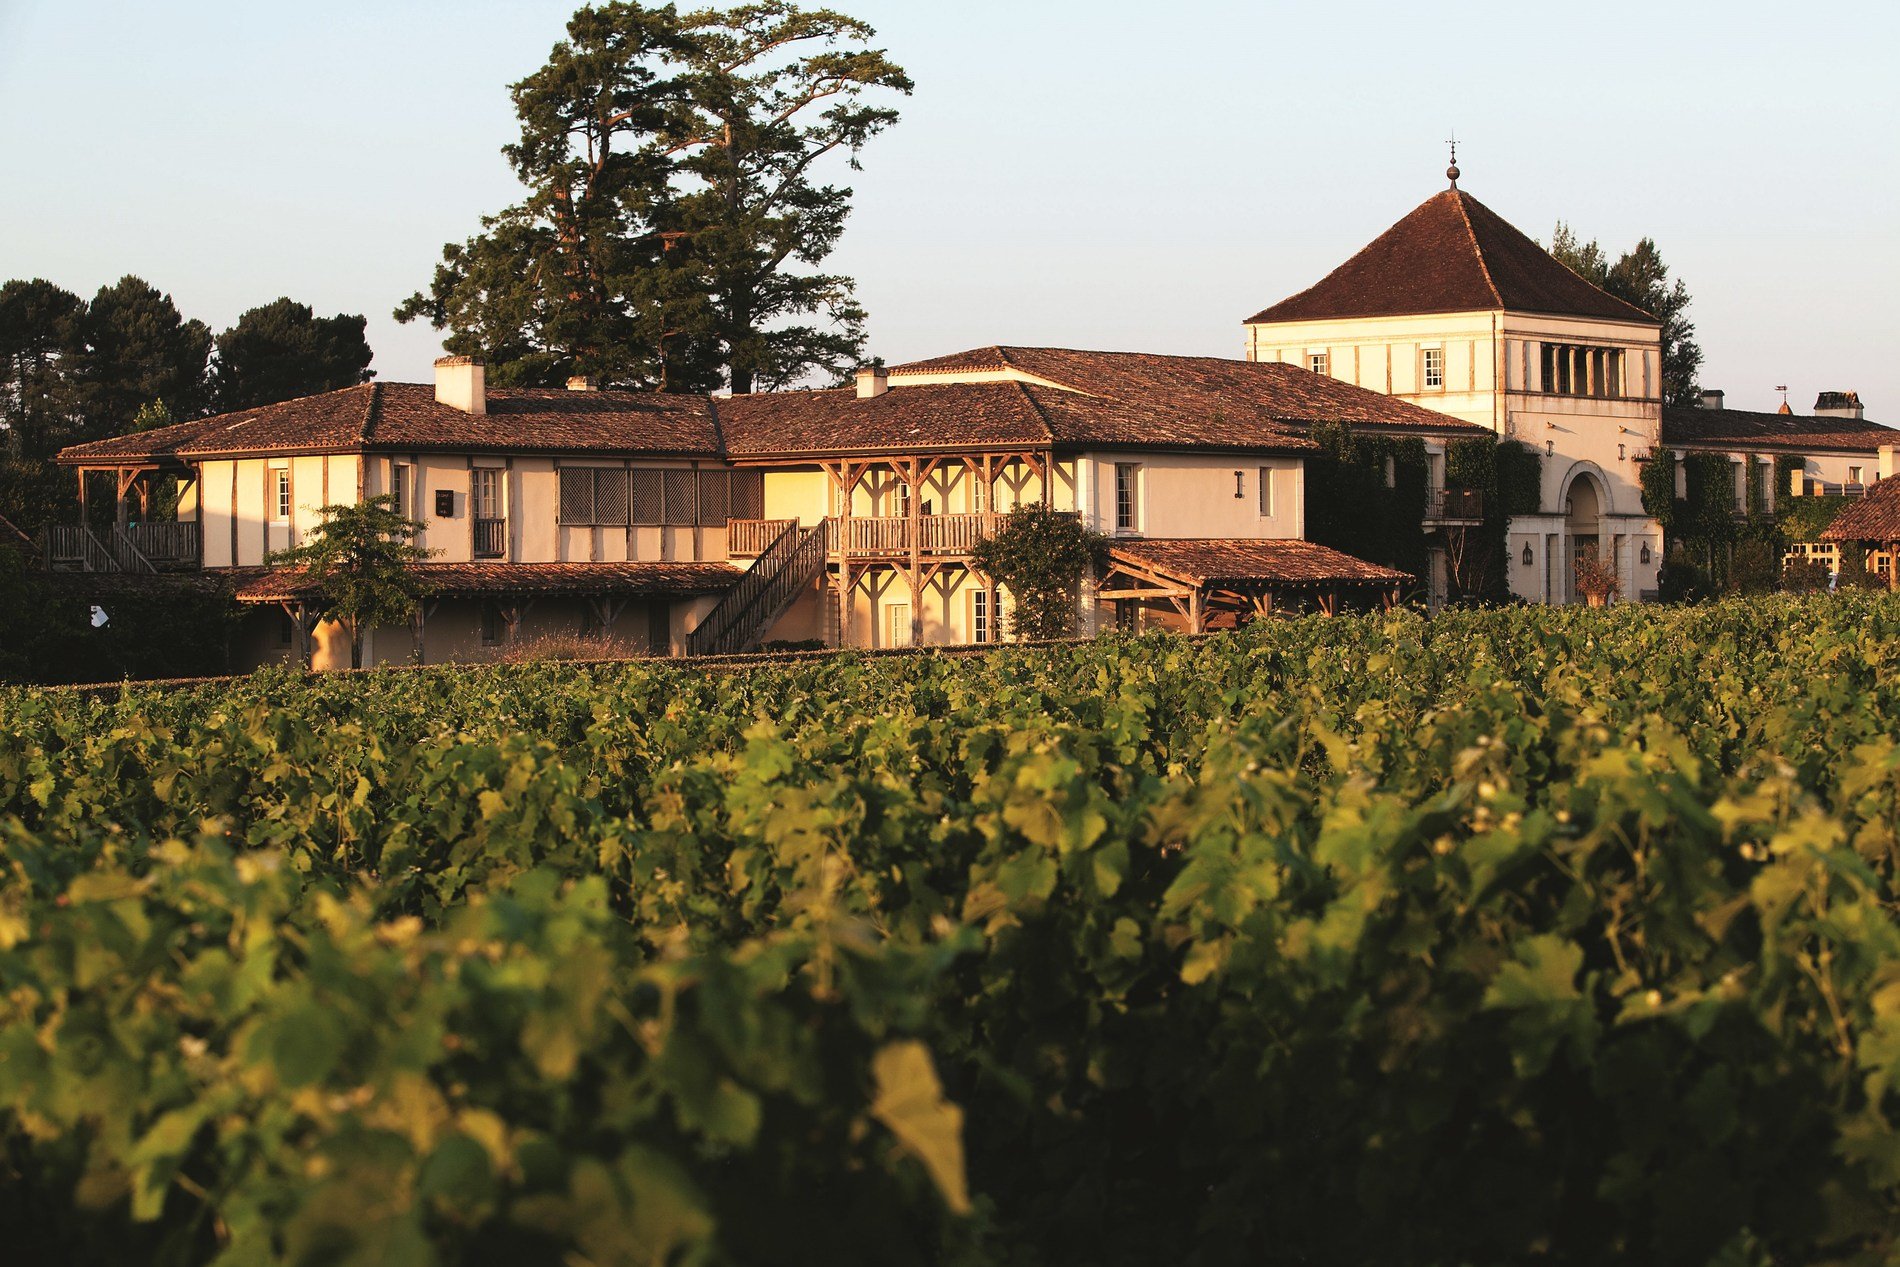 luxury hotel Les Sources de Caudalie 5 stars Martillac Bordeaux France vines of Château Smith Haut Lafitte